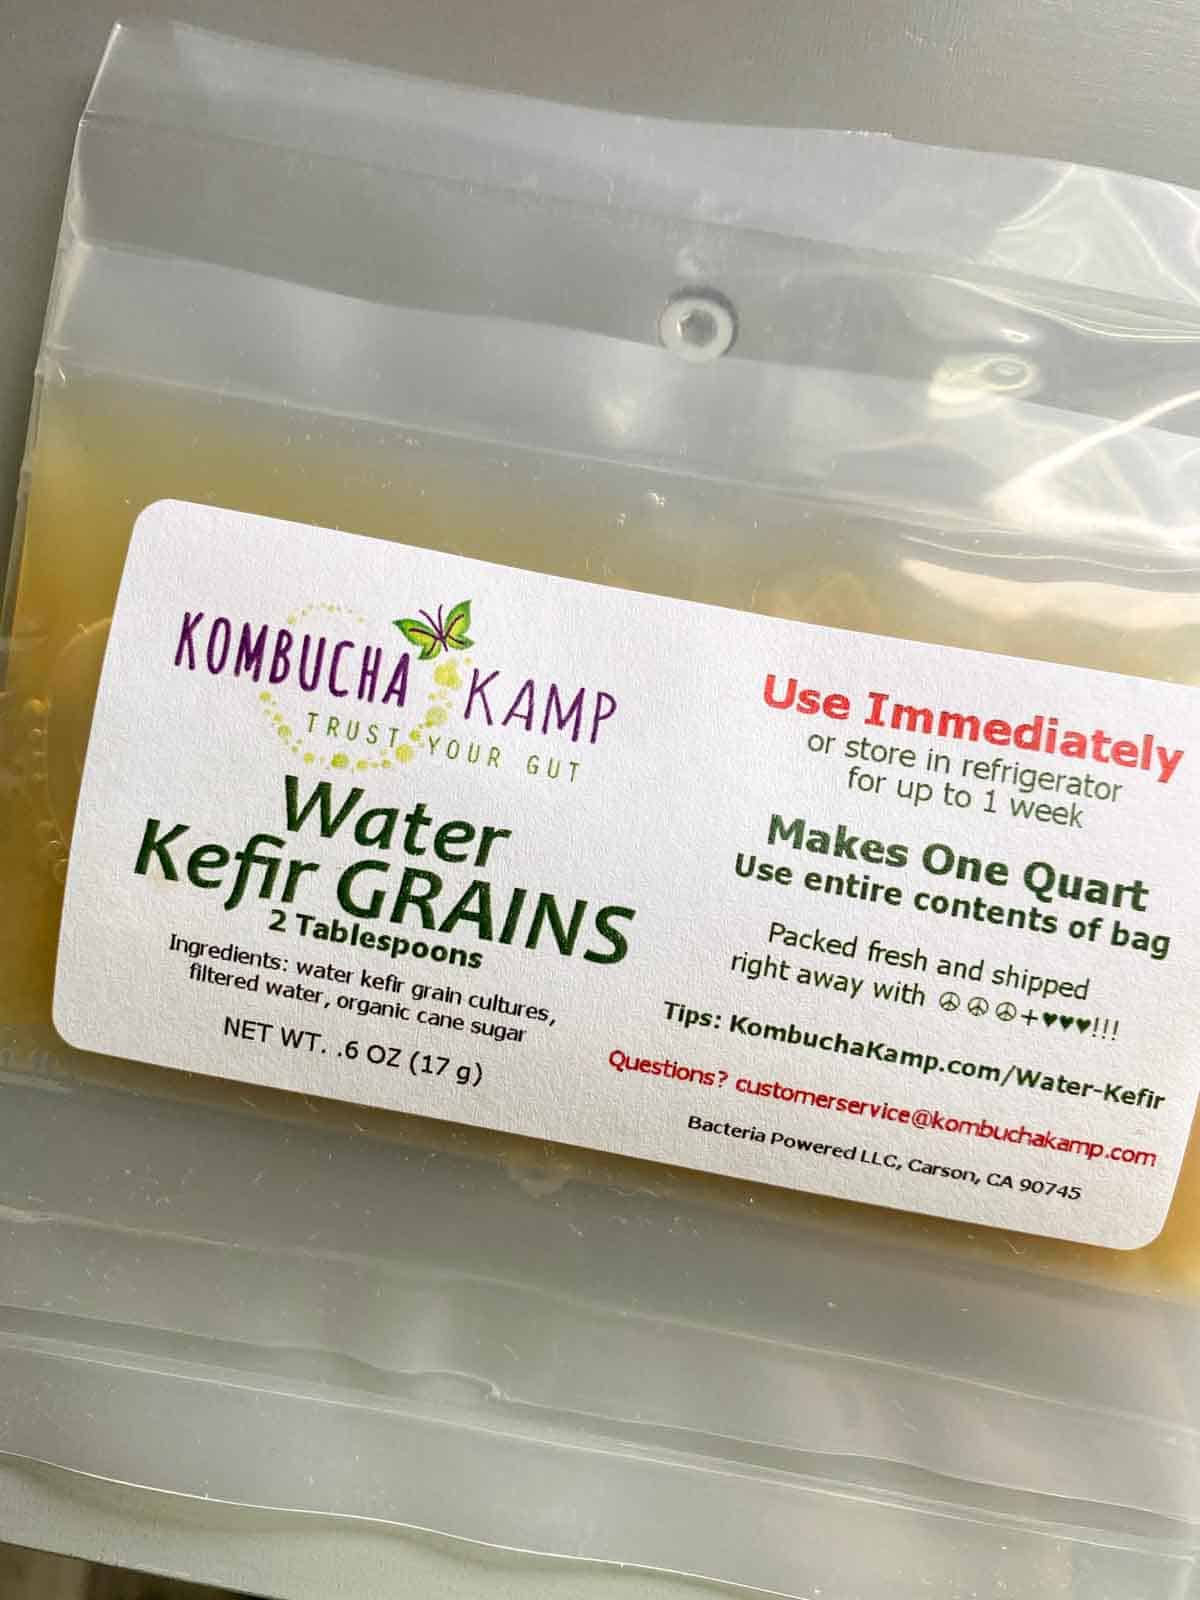 water kefir grains from kombucha kamp in package